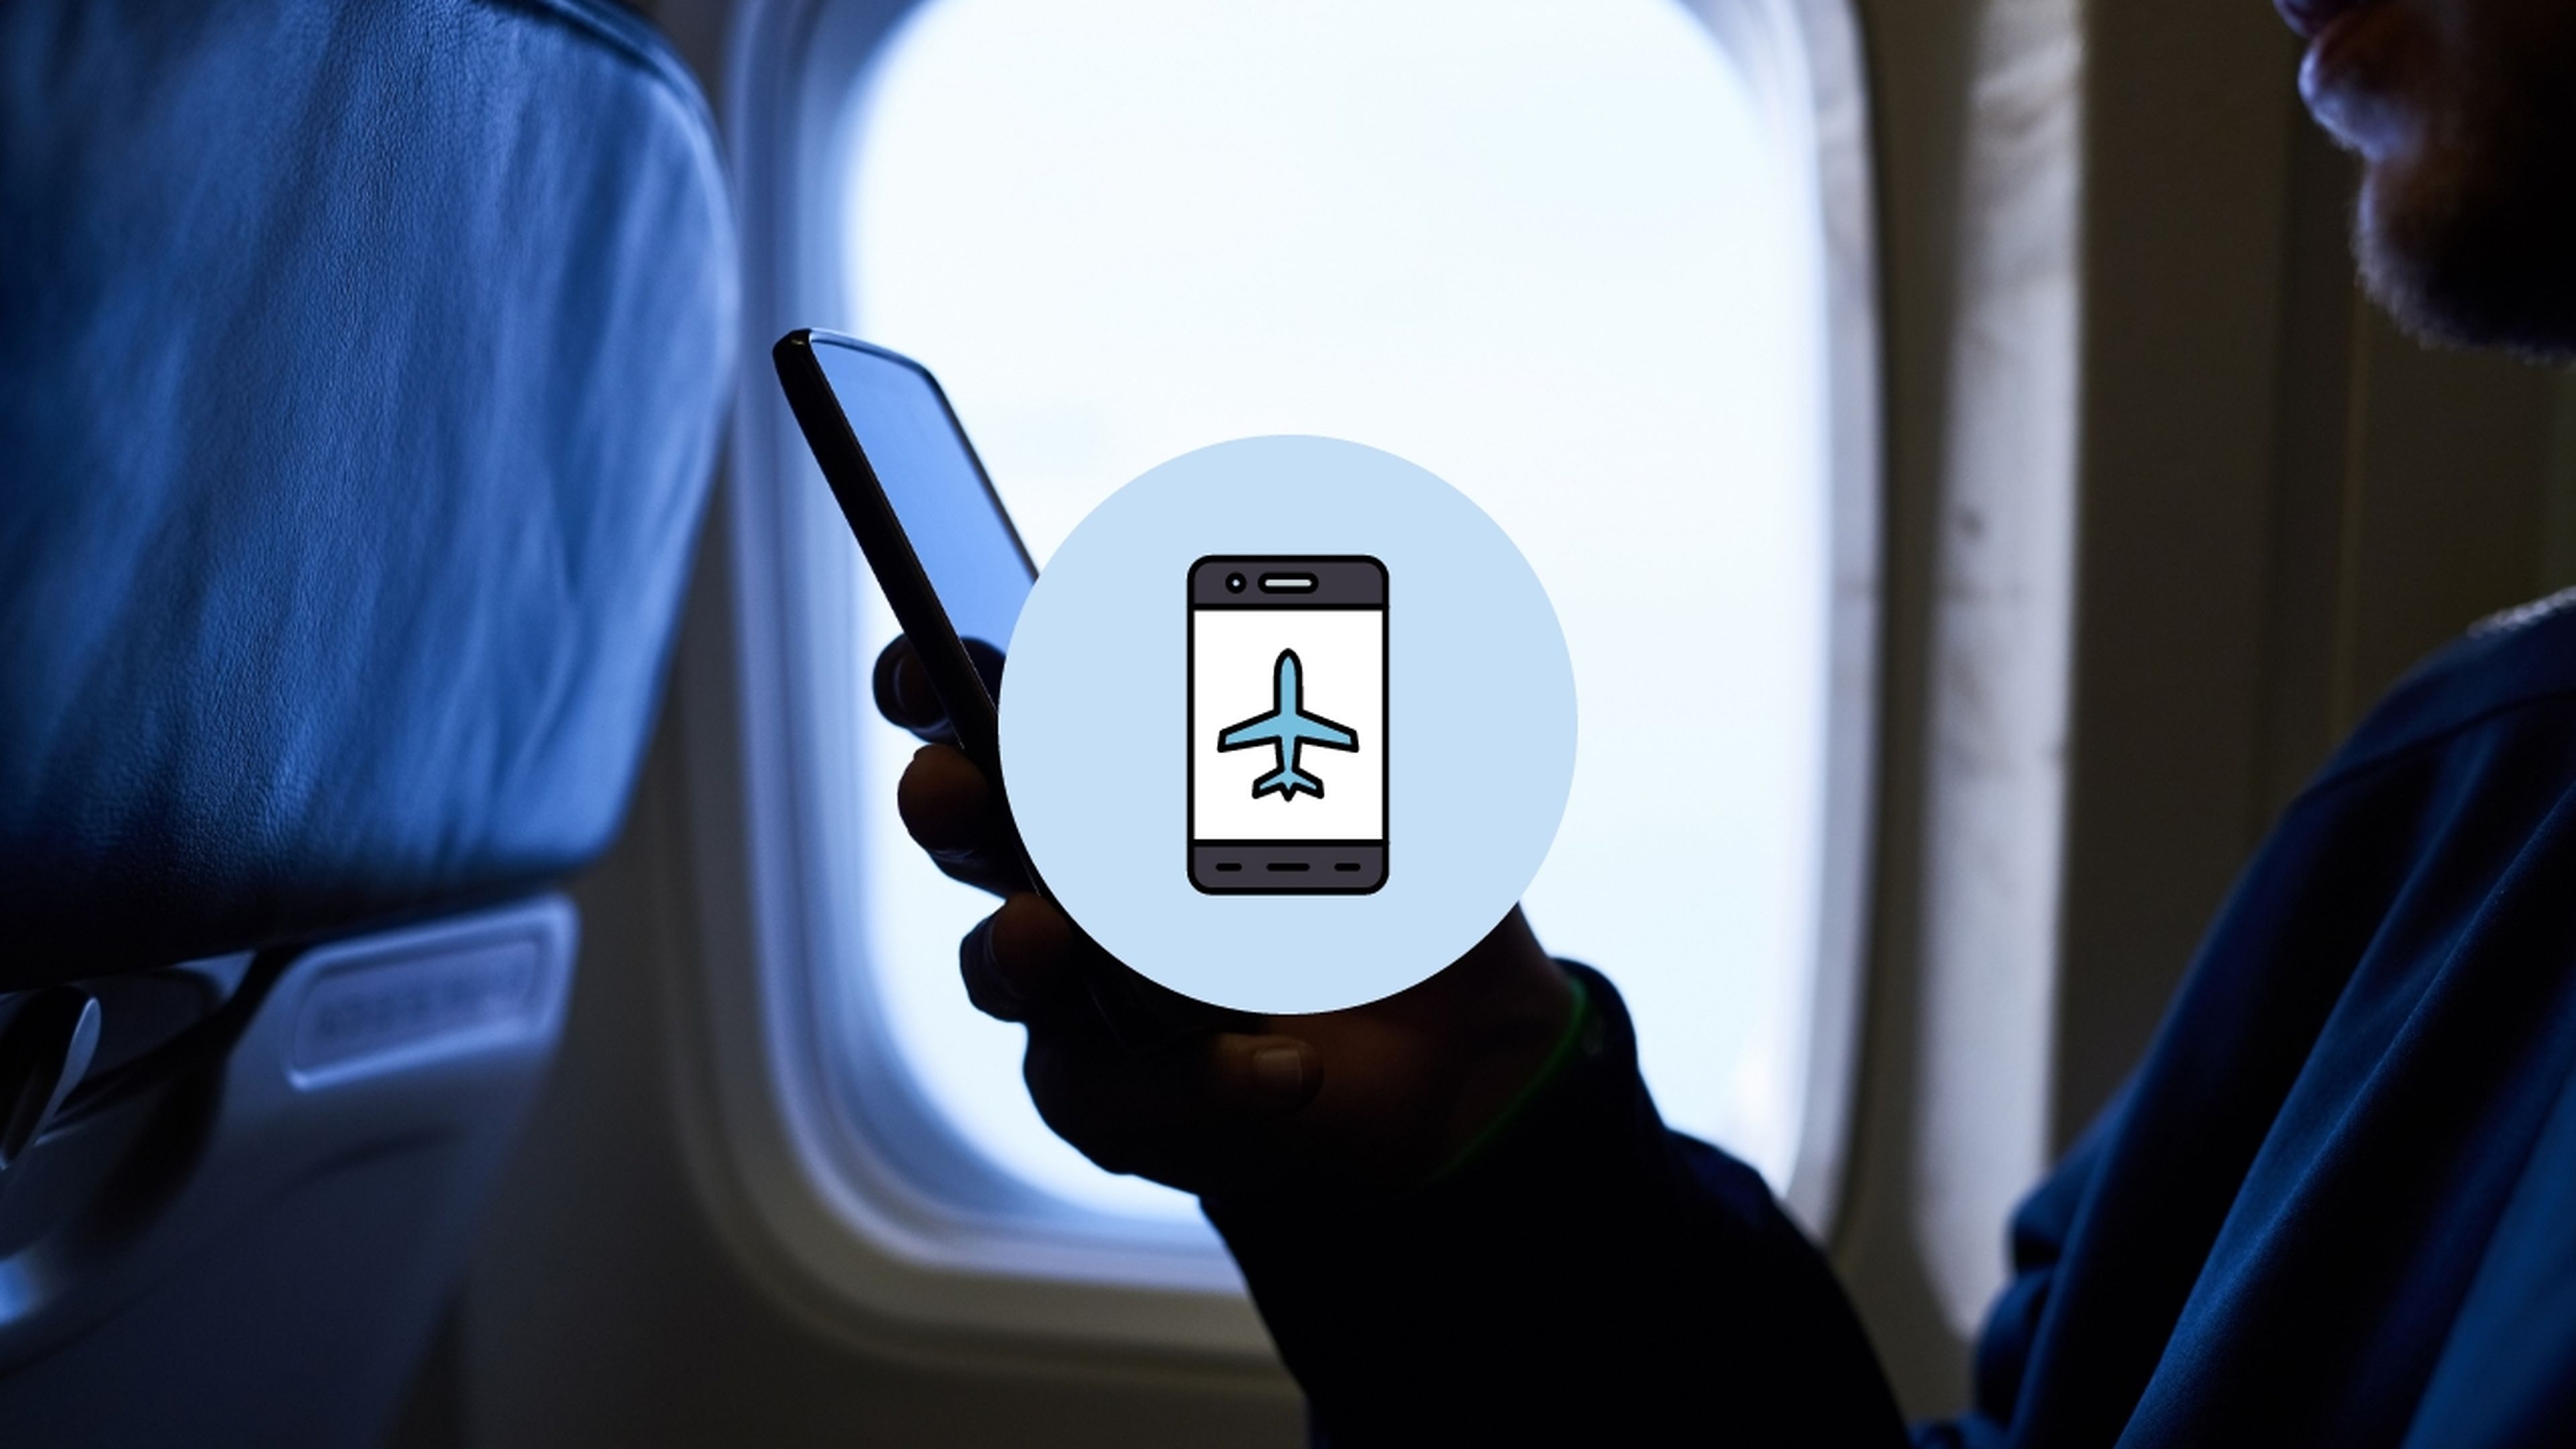 Modo avión en el móvil: qué es, para qué sirve y cuándo es necesario activarlo